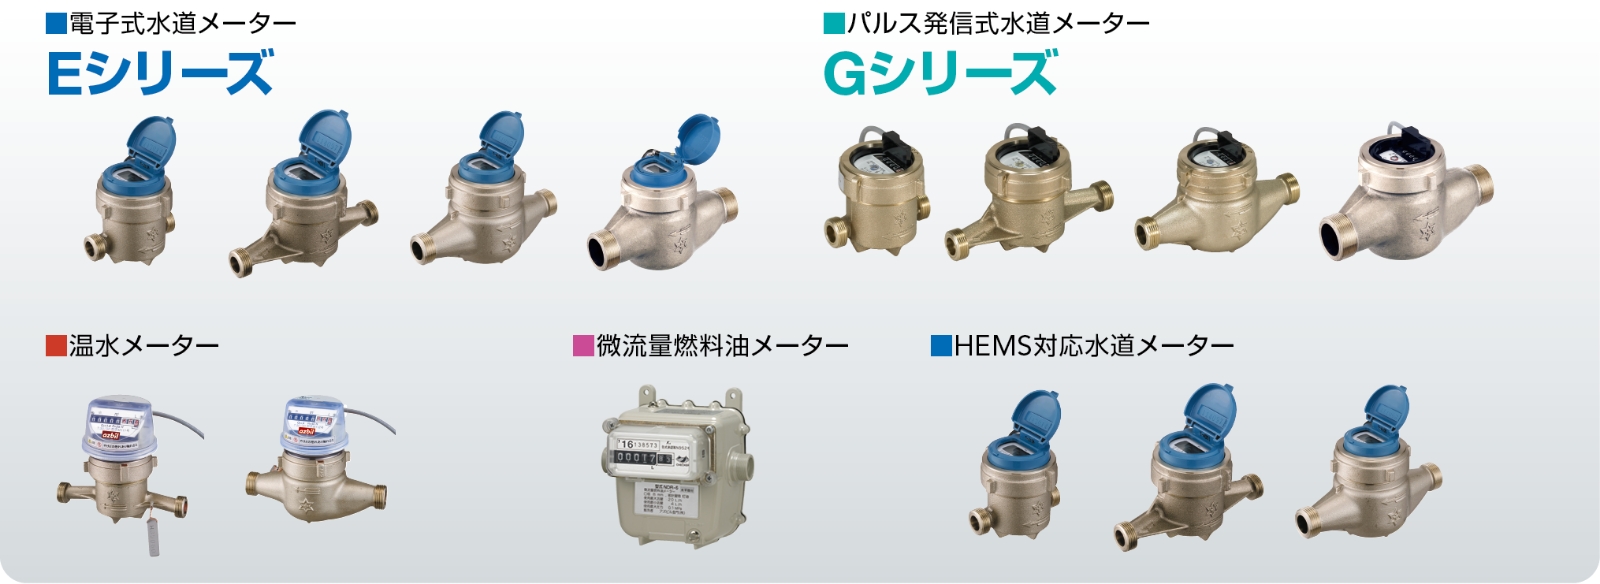 電子式水道メーターEシリーズ　パルス発信式水道メーターGシリーズ　温水メーター　微流量燃料油メーター　HEMS対応水道メーター